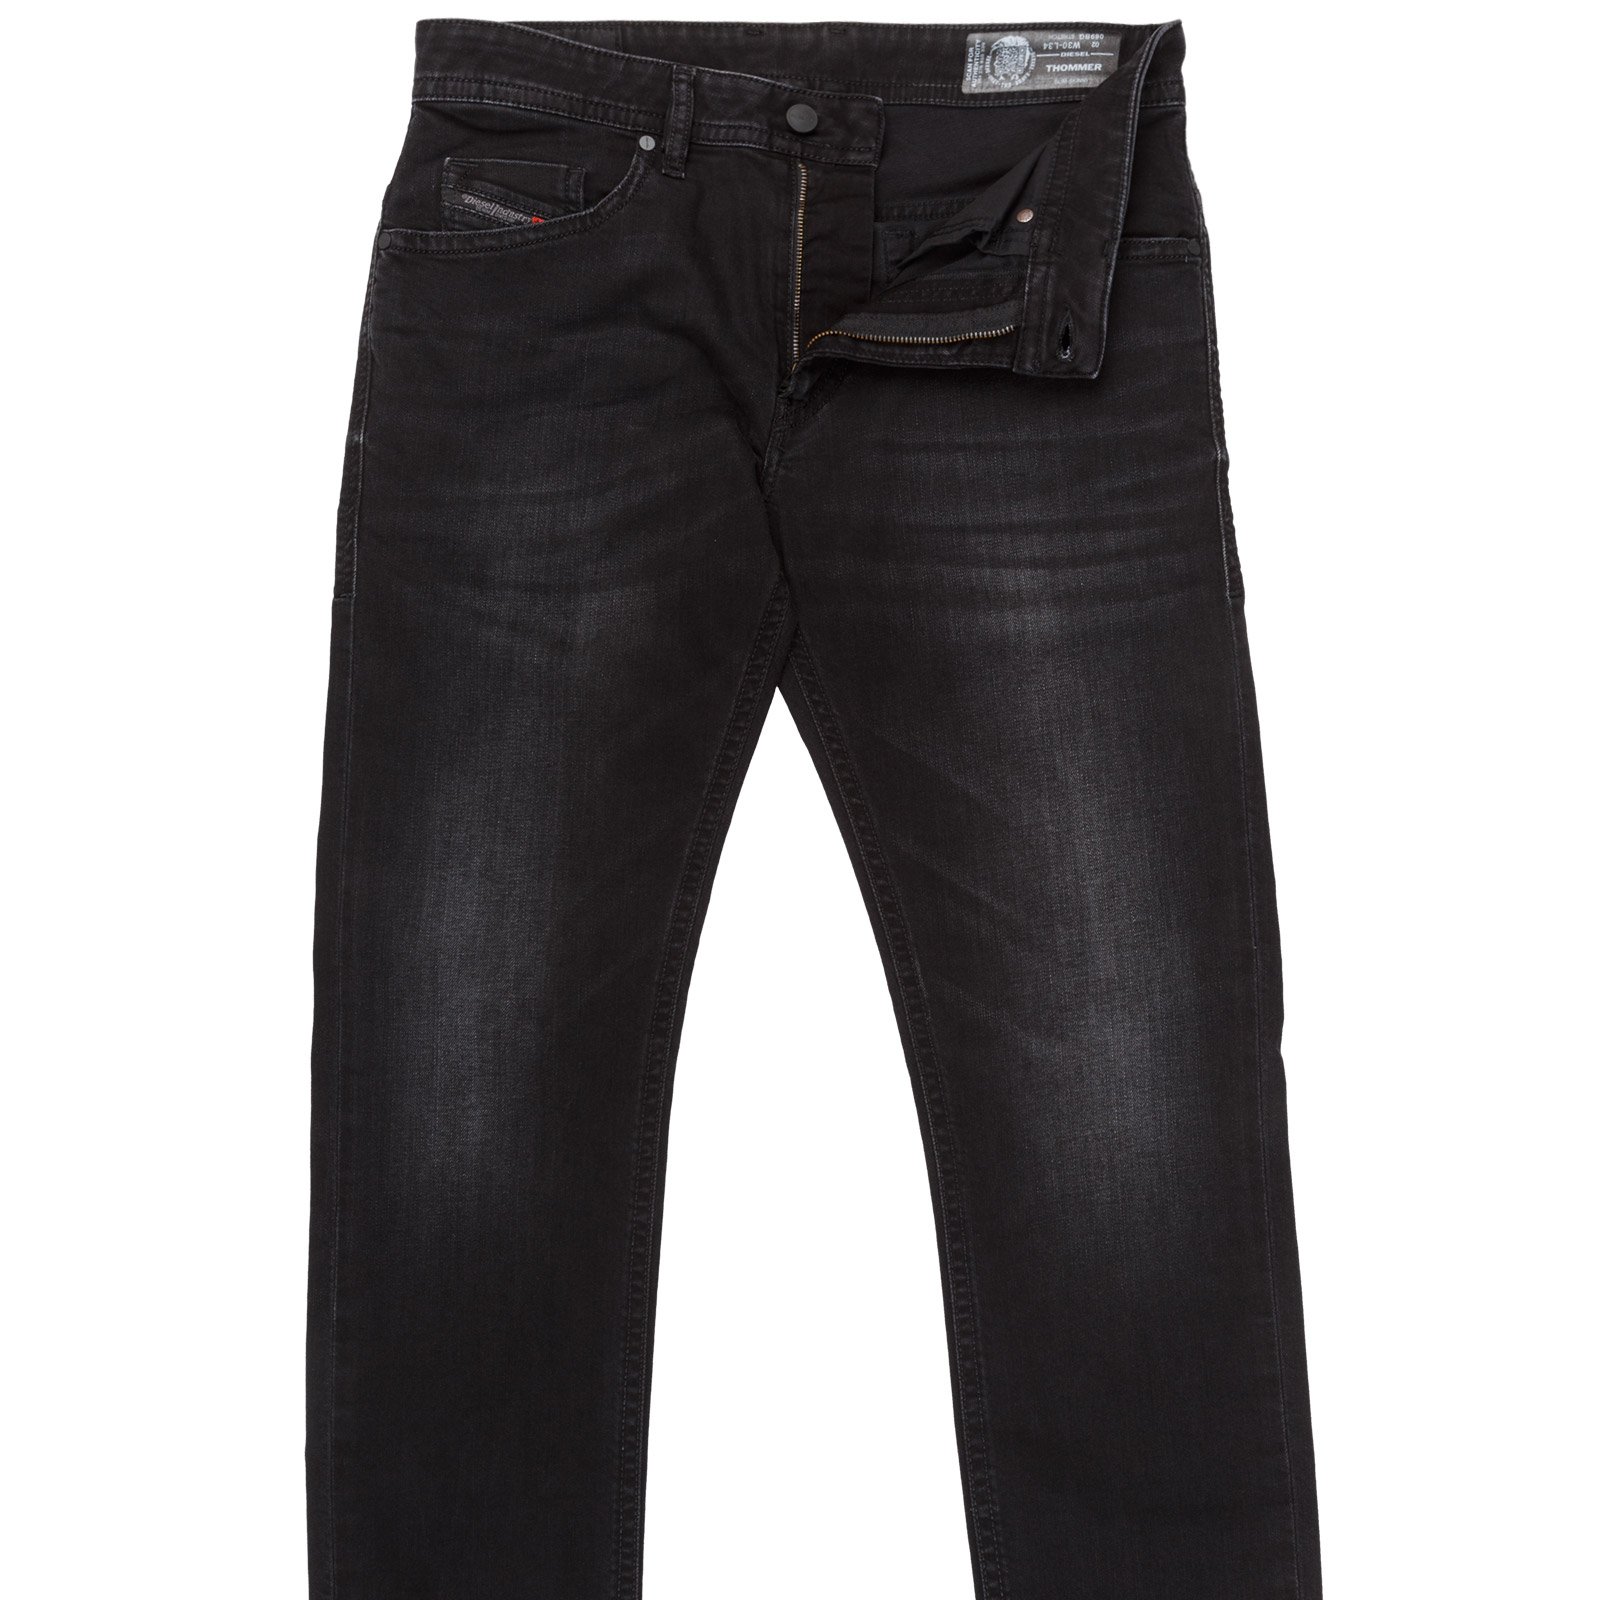 Thommer Slim Fit Light Aged Black Denim Jeans - Jeans : FA2 Online ...